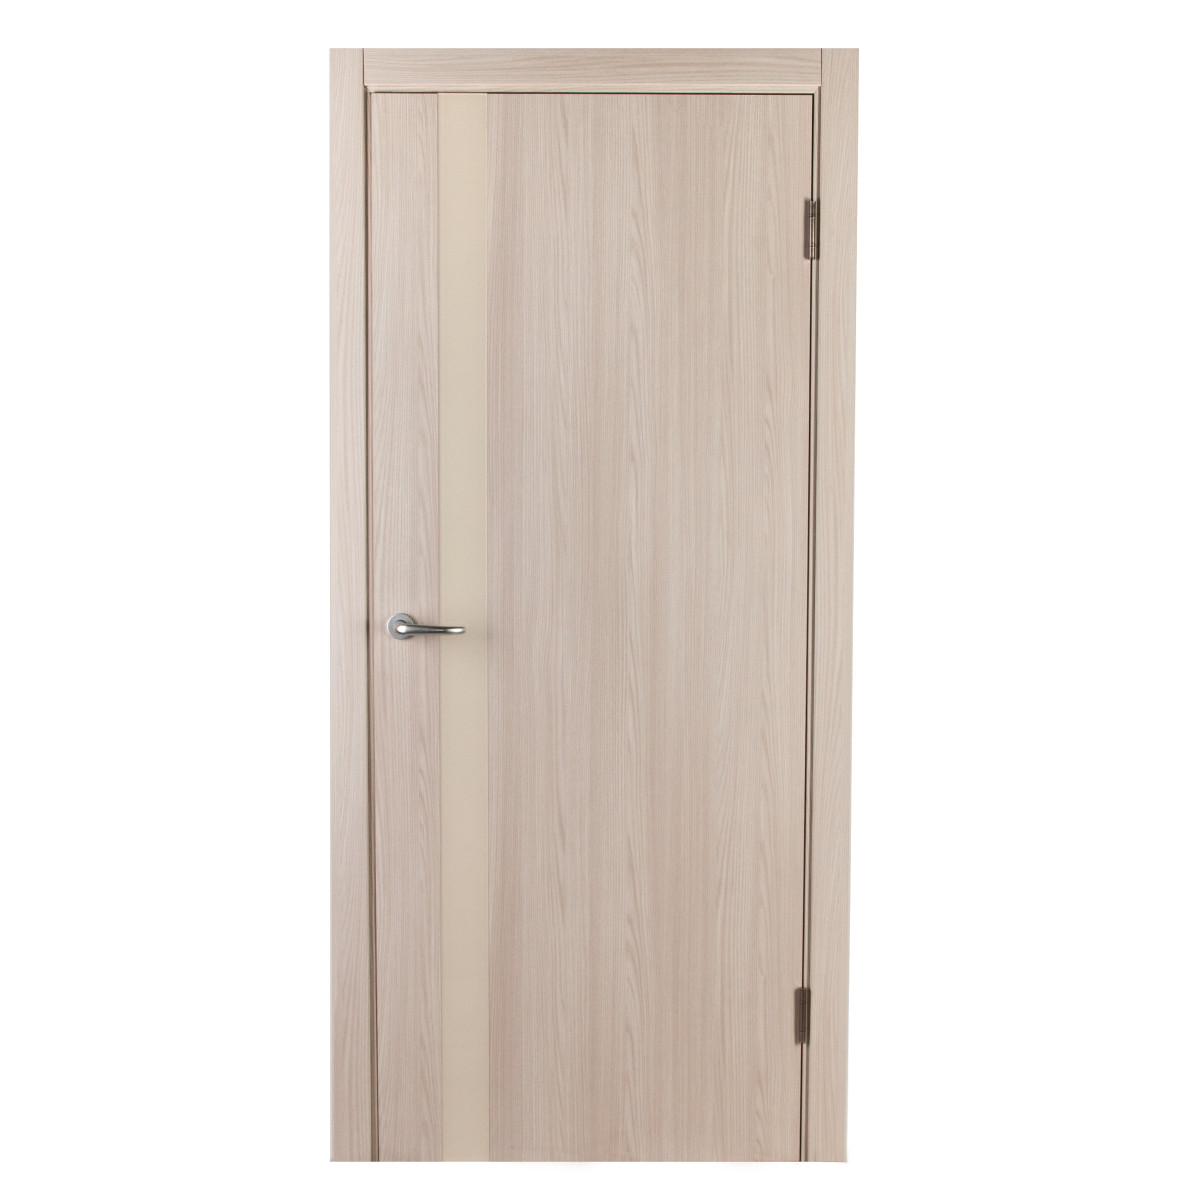 Дверь межкомнатная глухая с замком и петлями в комплекте Мирра 90x200 см, Hardflex, цвет ясень бора